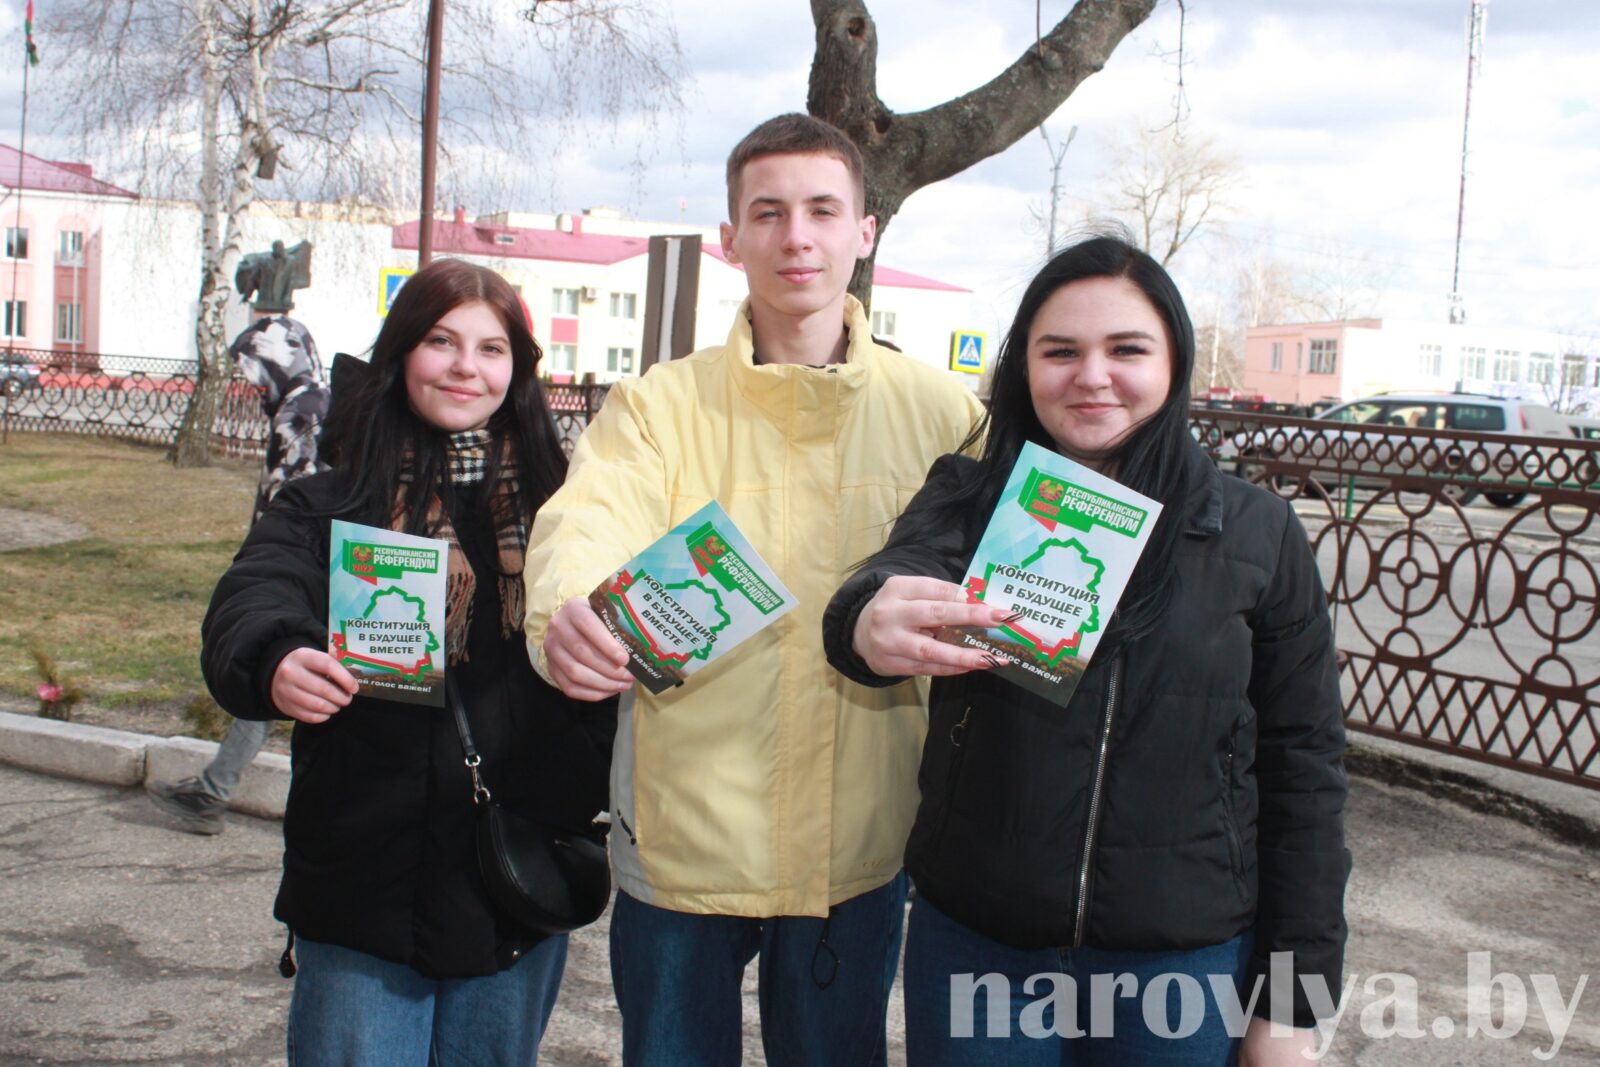 Молодежь Наровлянщины, впервые участвуя в референдуме, голосует ЗА!